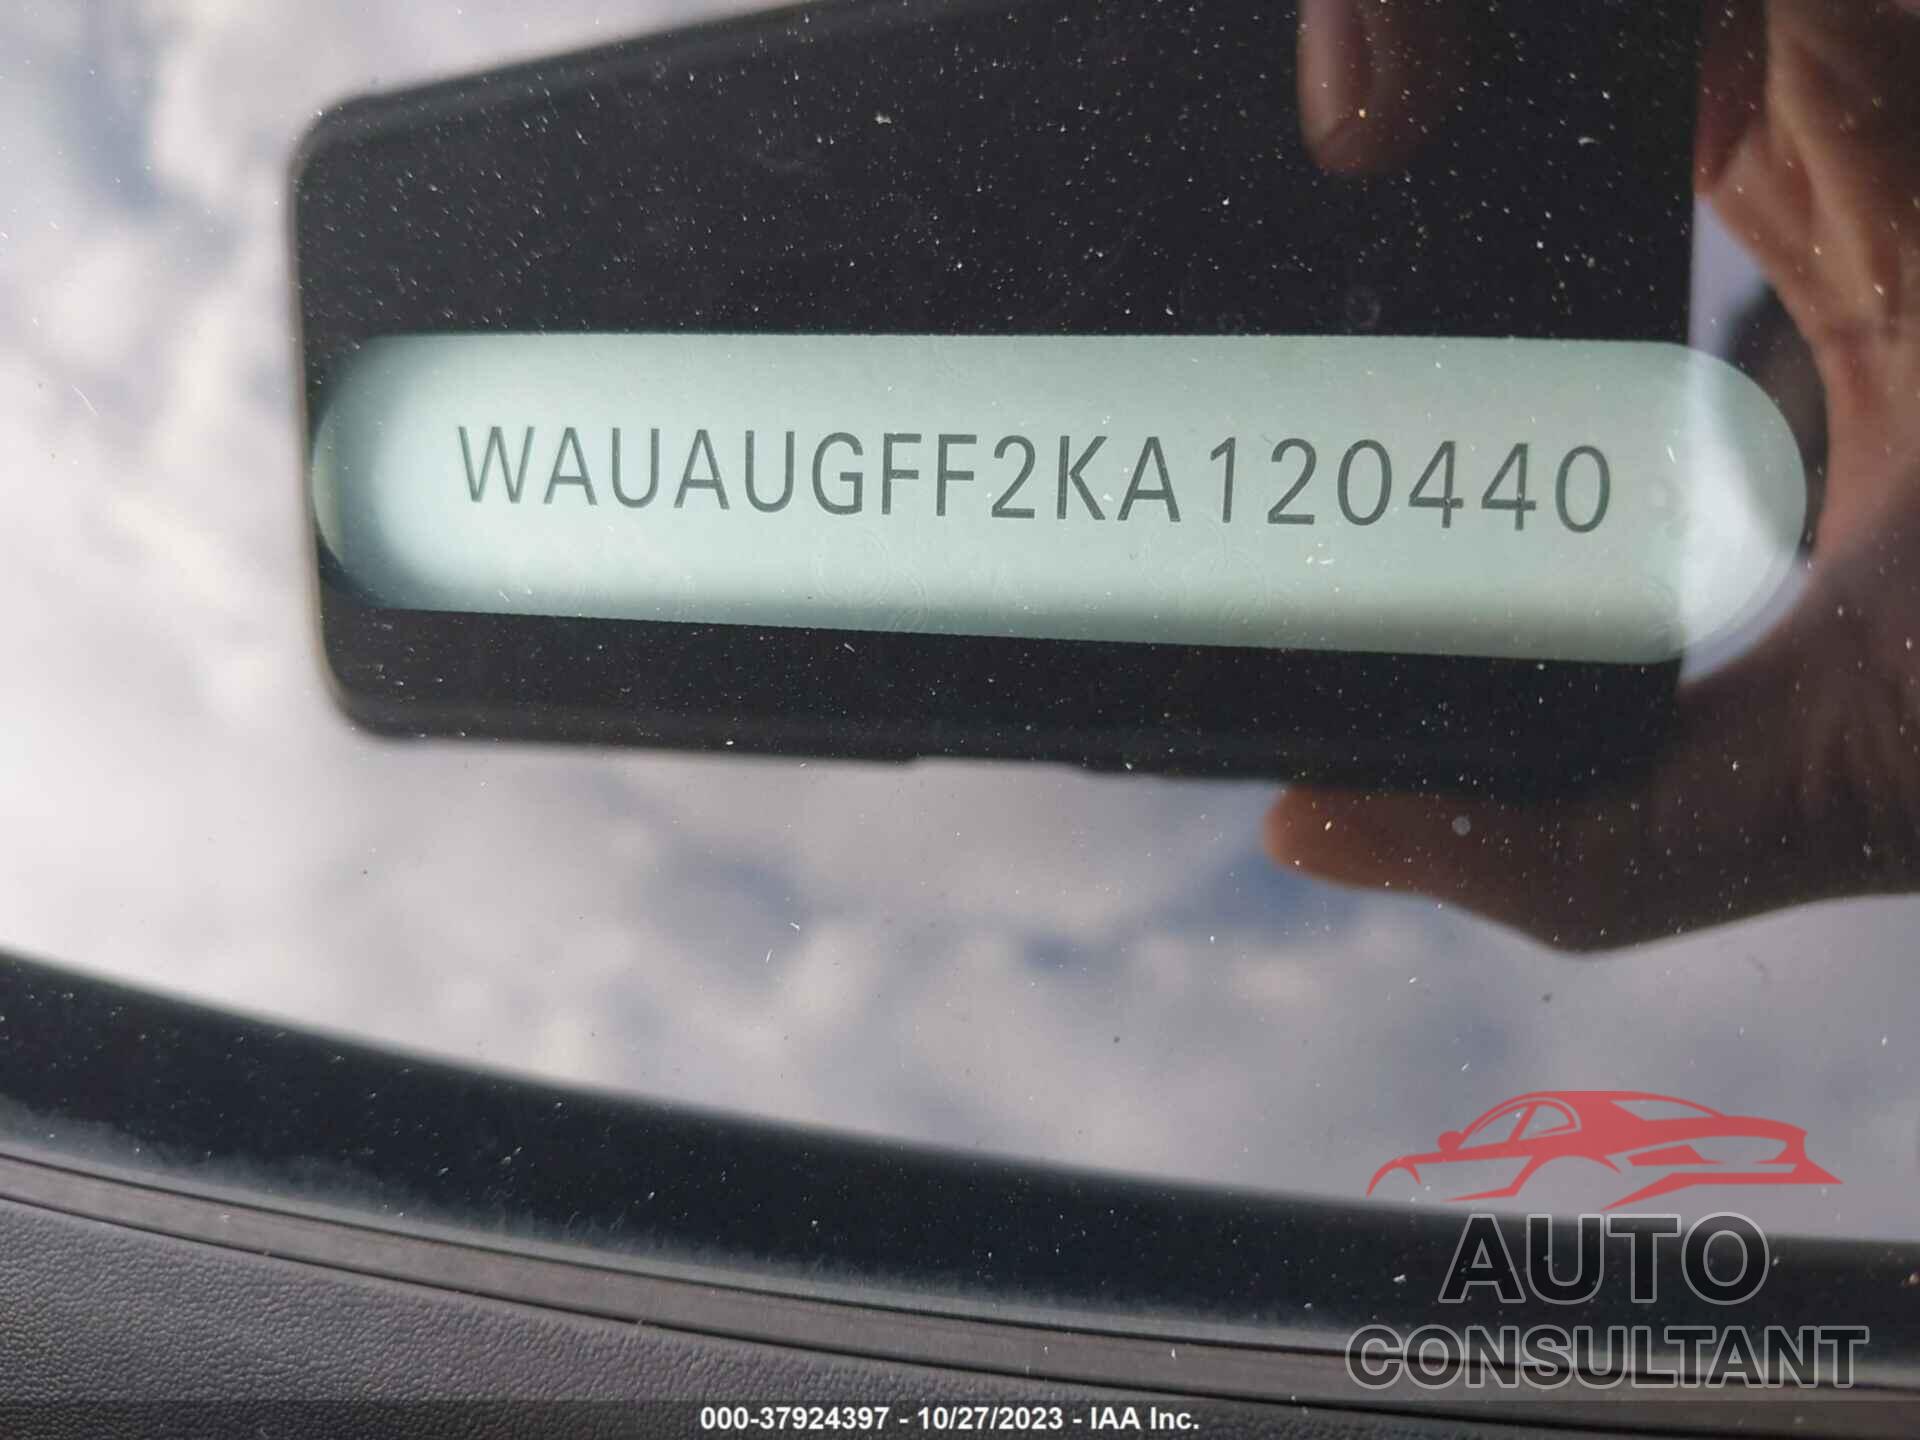 AUDI A3 2019 - WAUAUGFF2KA120440